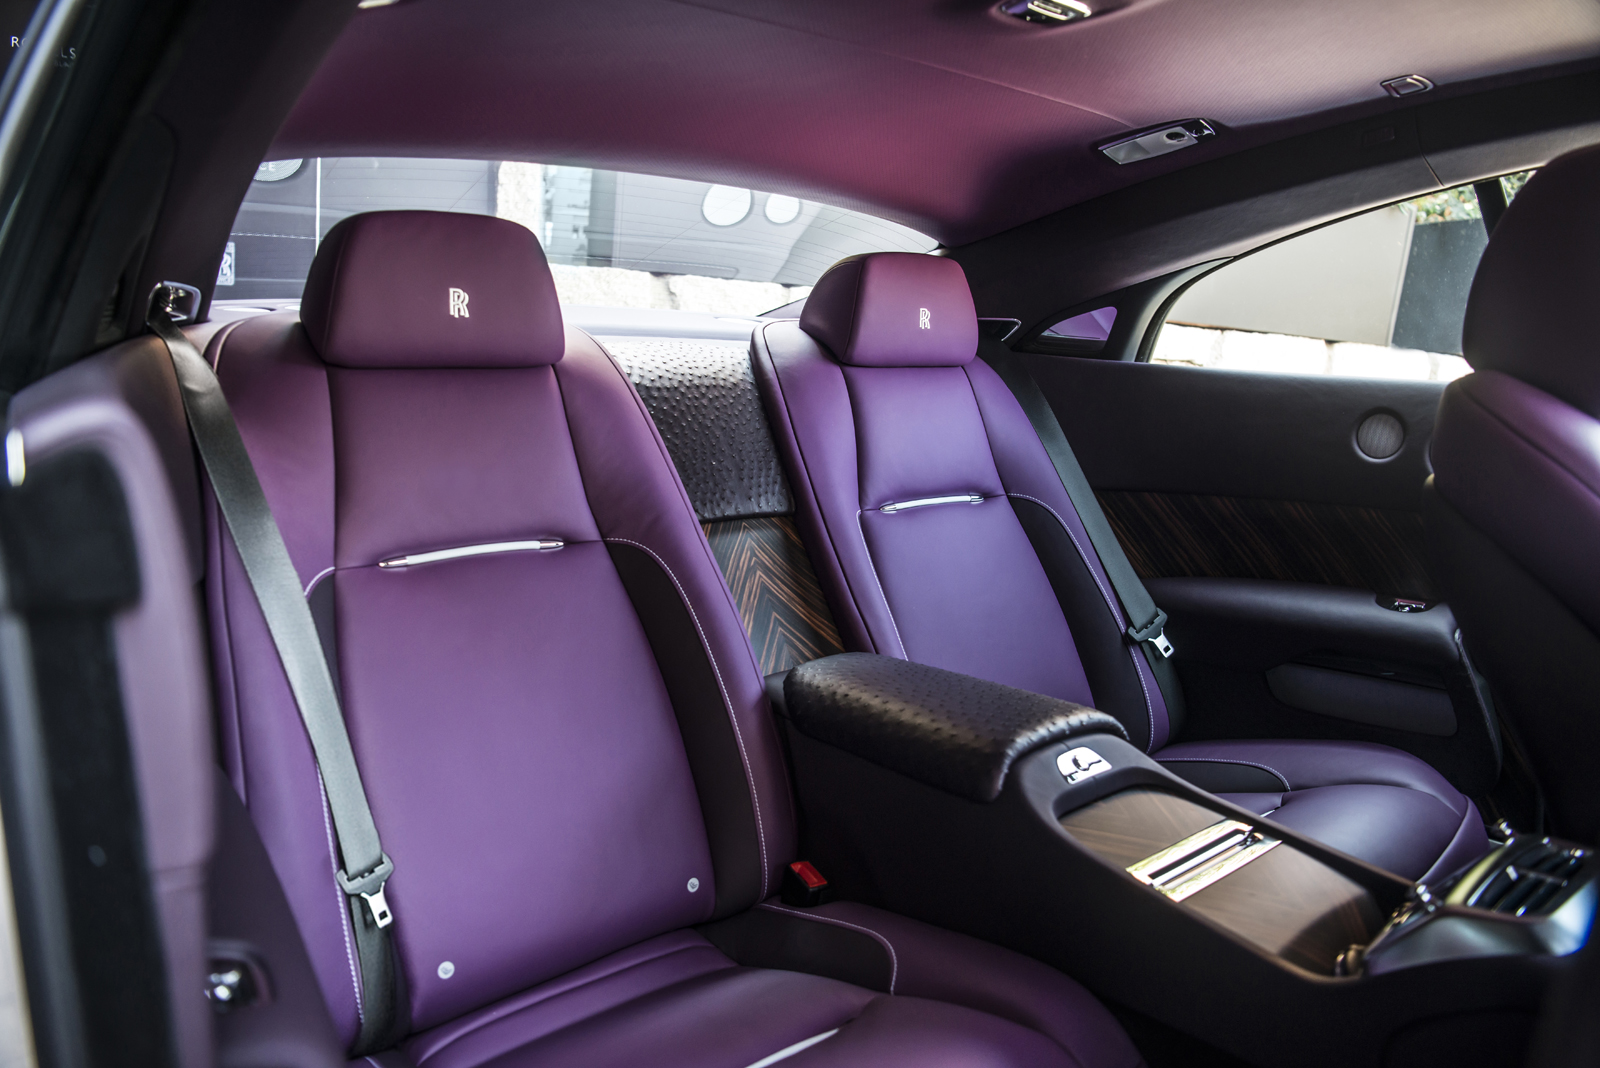 
Nội thất màu tím lạ mắt của Rolls-Royce Wraith phiên bản đặc biệt.
